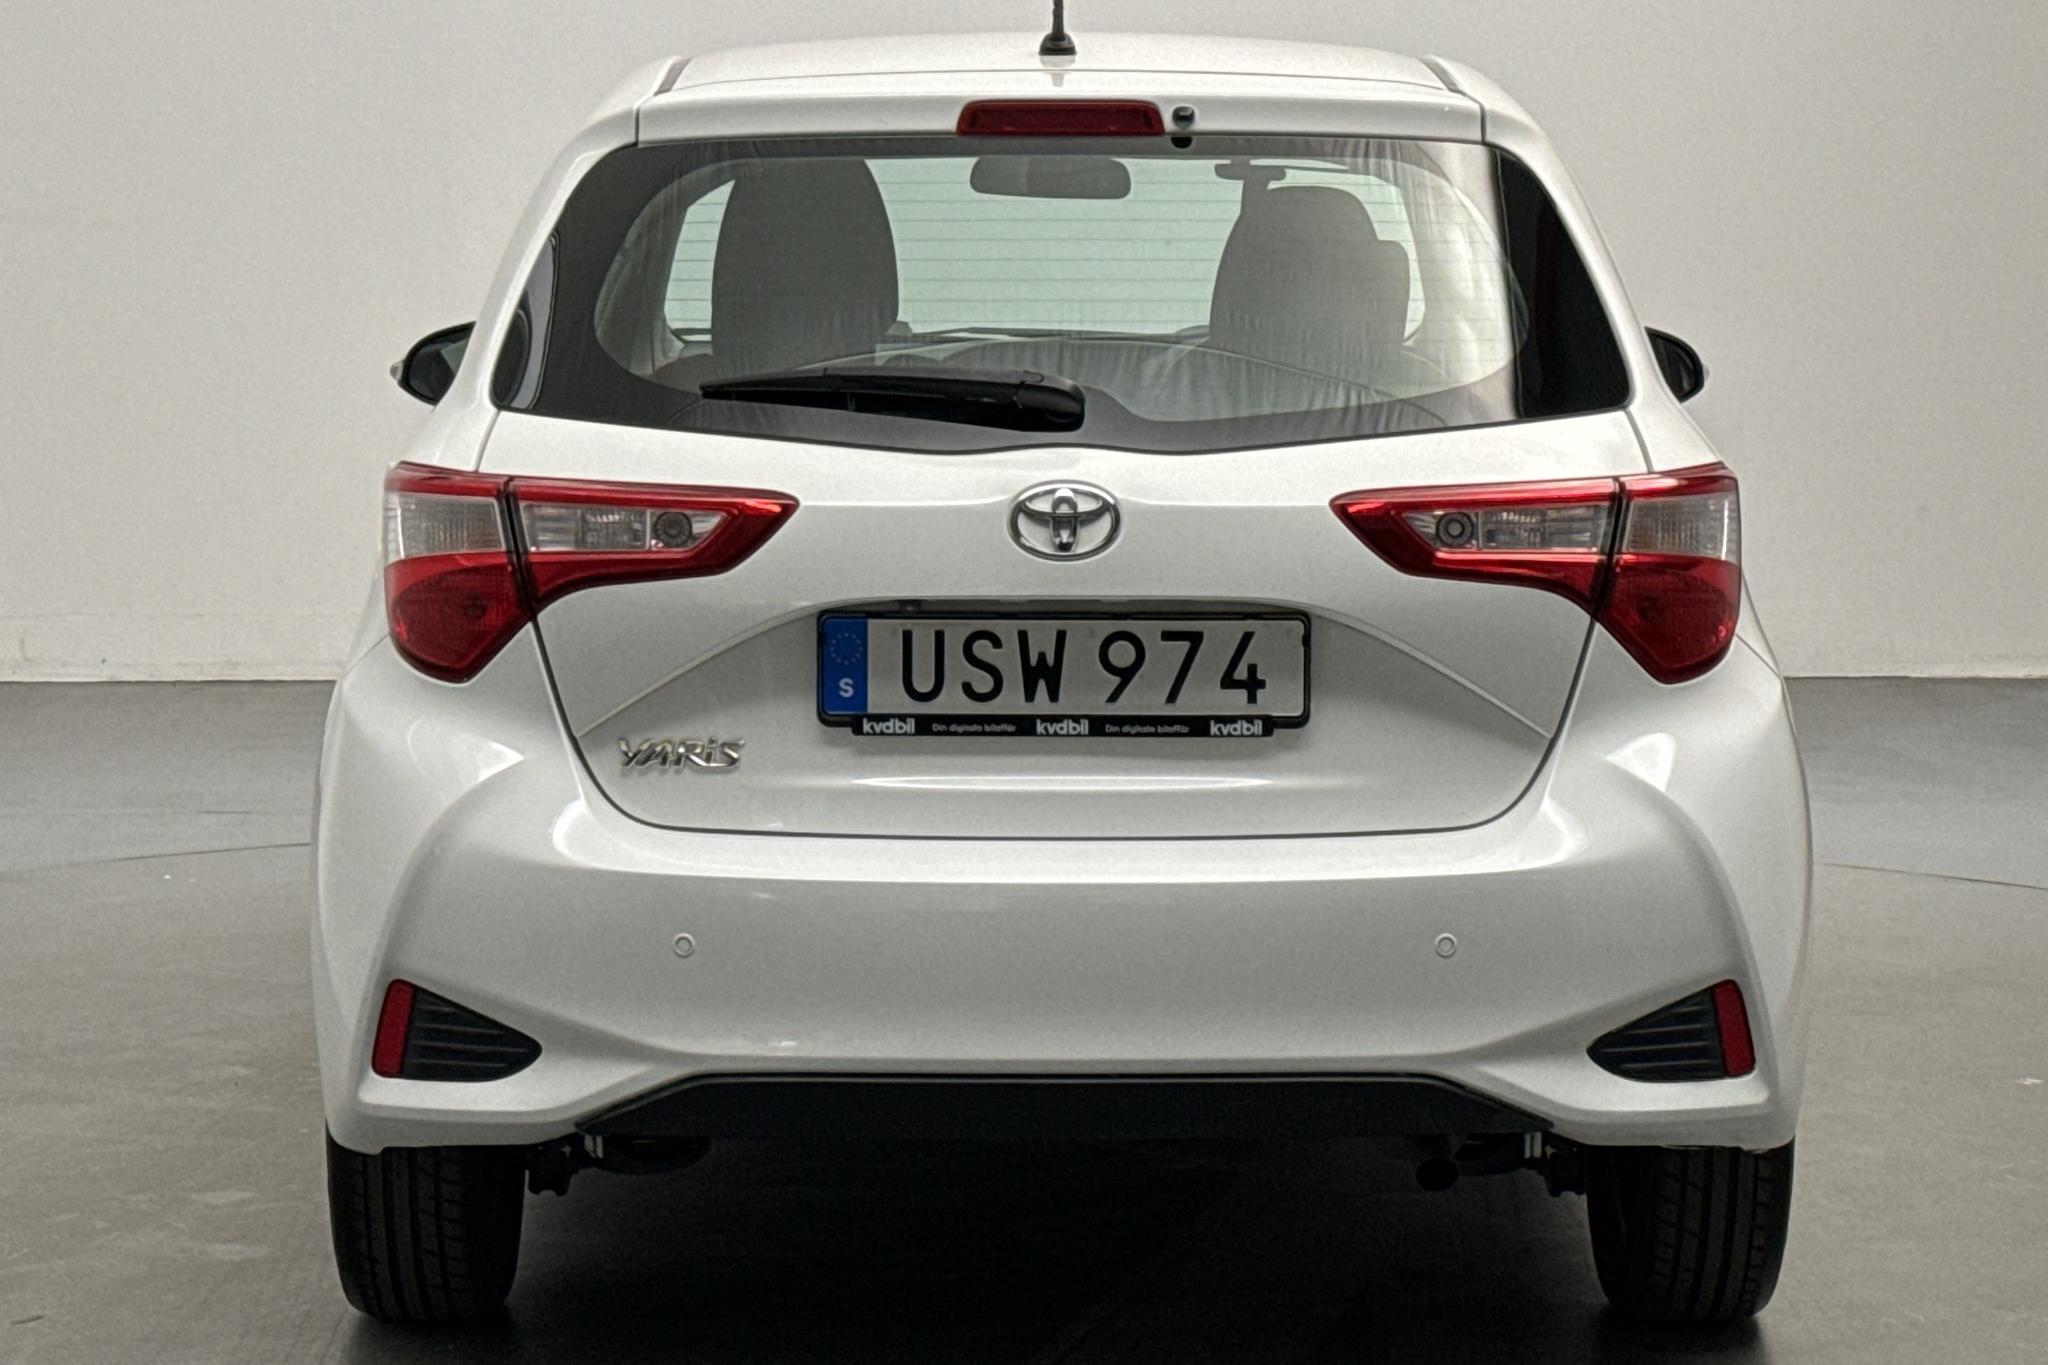 Toyota Yaris 1.5 5dr (111hk) - 82 050 km - Automaattinen - valkoinen - 2018